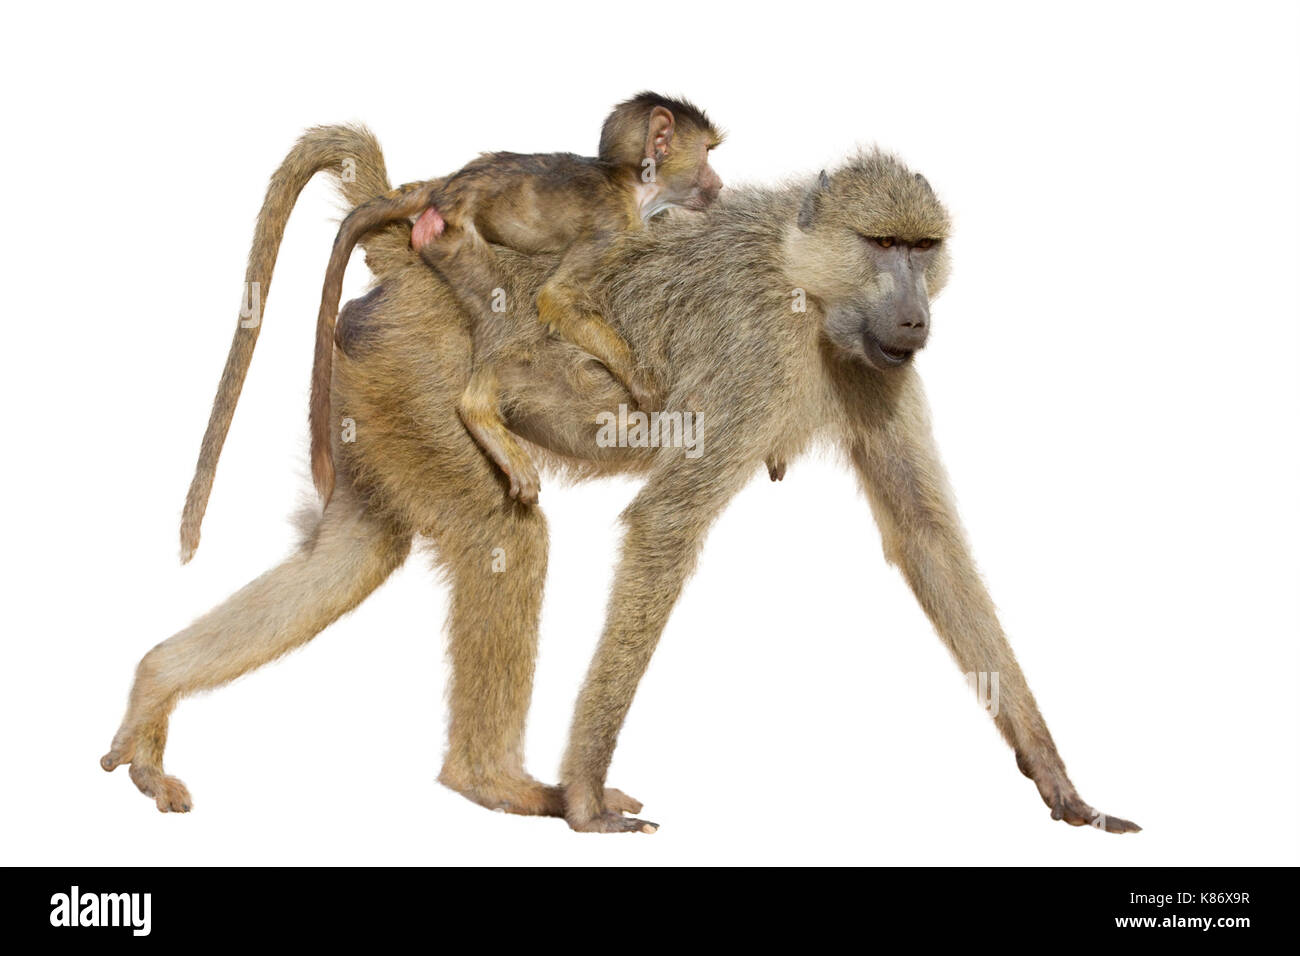 Babbuino vivo giallo femminile (Papio cynocephalus) con un bambino sulla schiena, isolato su sfondo bianco. Foto Stock